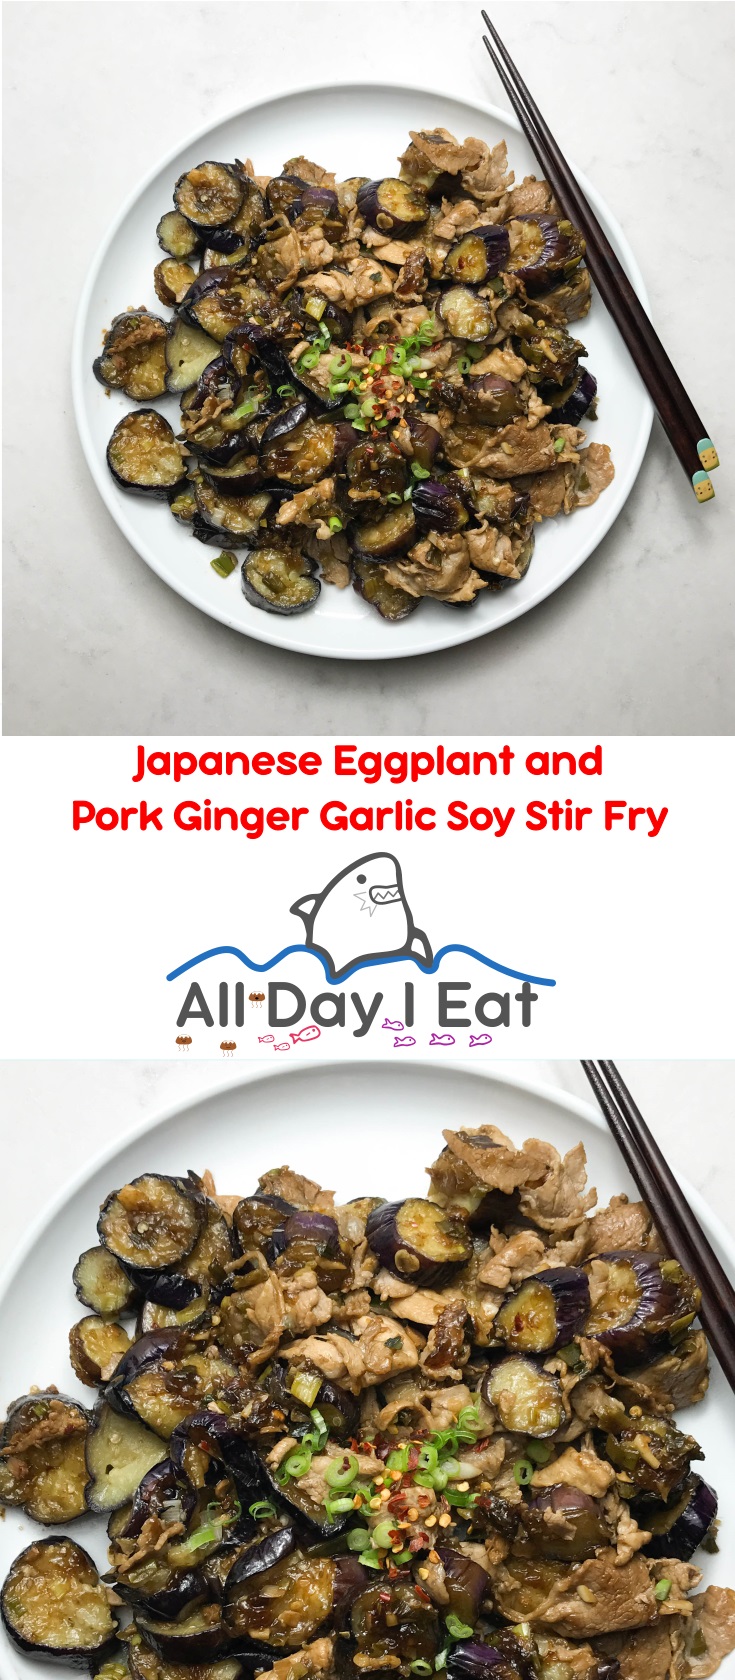 Japanese Eggplant and Pork Ginger Garlic Soy Stir Fry | www.alldayieat.com